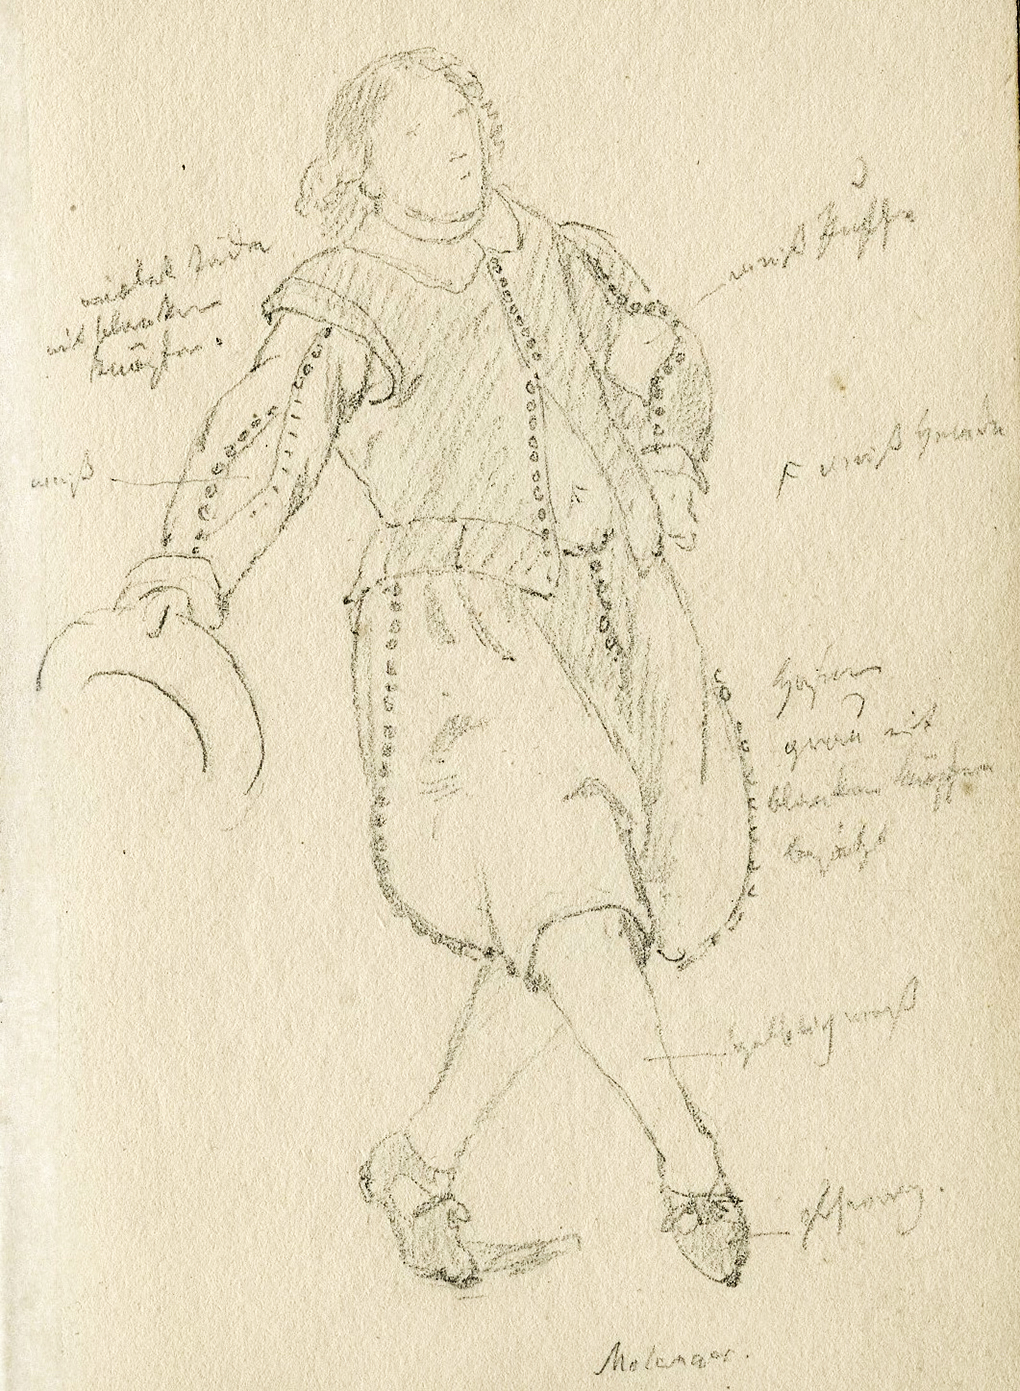 Ludwig Most, Verbeugung männliche Figur, um 1846, Bleistift, Pergamentpapier, Zeichnung im Skizzenbuch Nr. 12, Karte 32, Nationalmuseum in Stettin